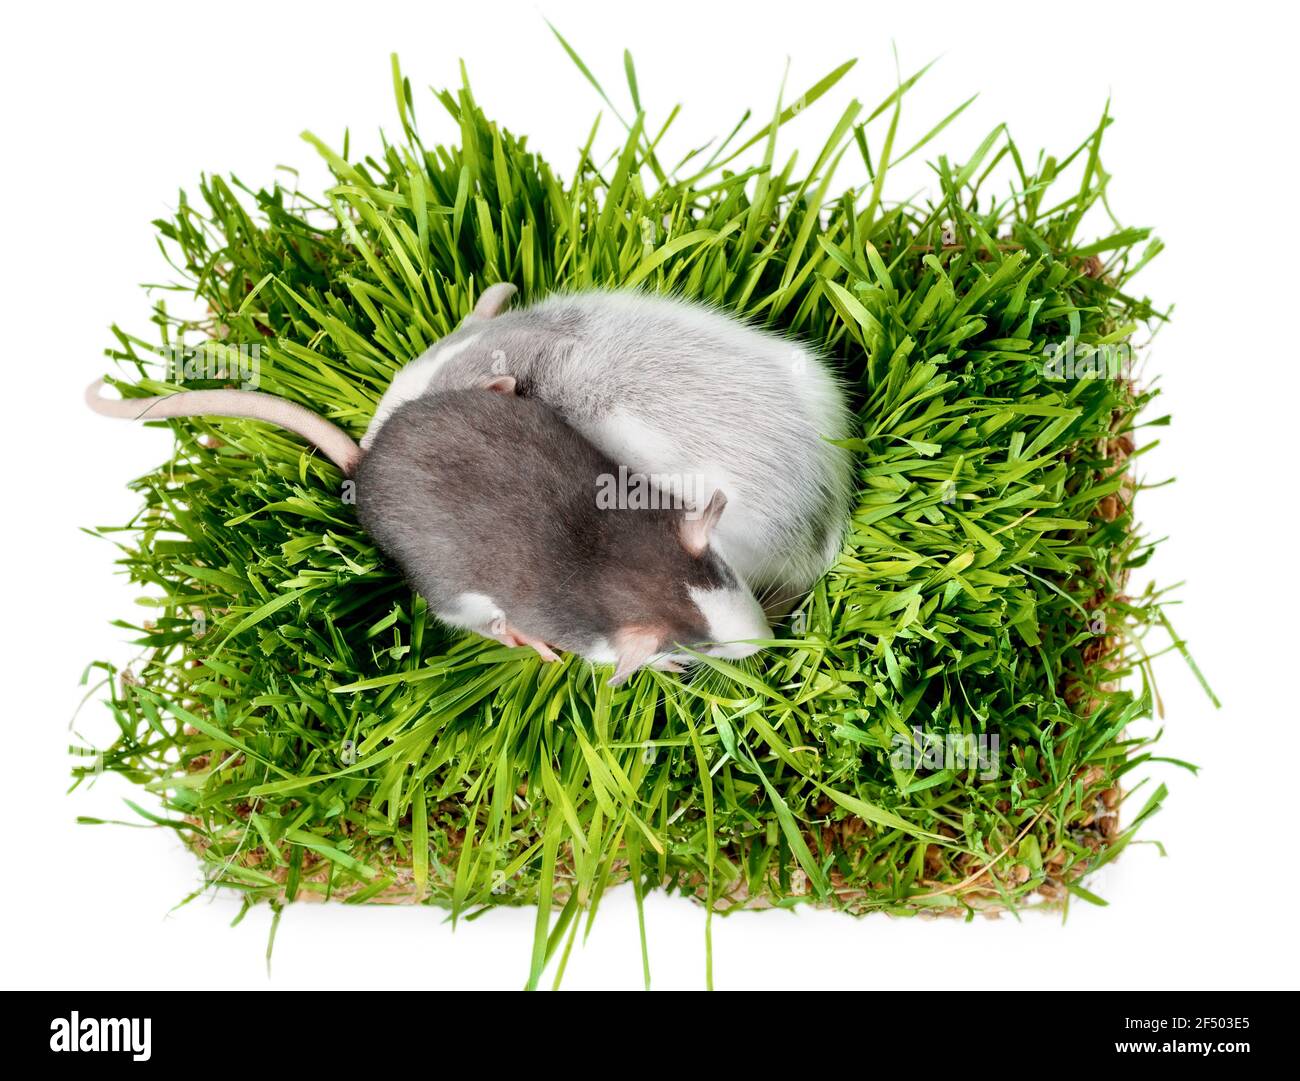 Flach lagen zwei Ratten der Husky Rasse in Hafer Mikrogrünes Gras auf weißem Hintergrund Stockfoto